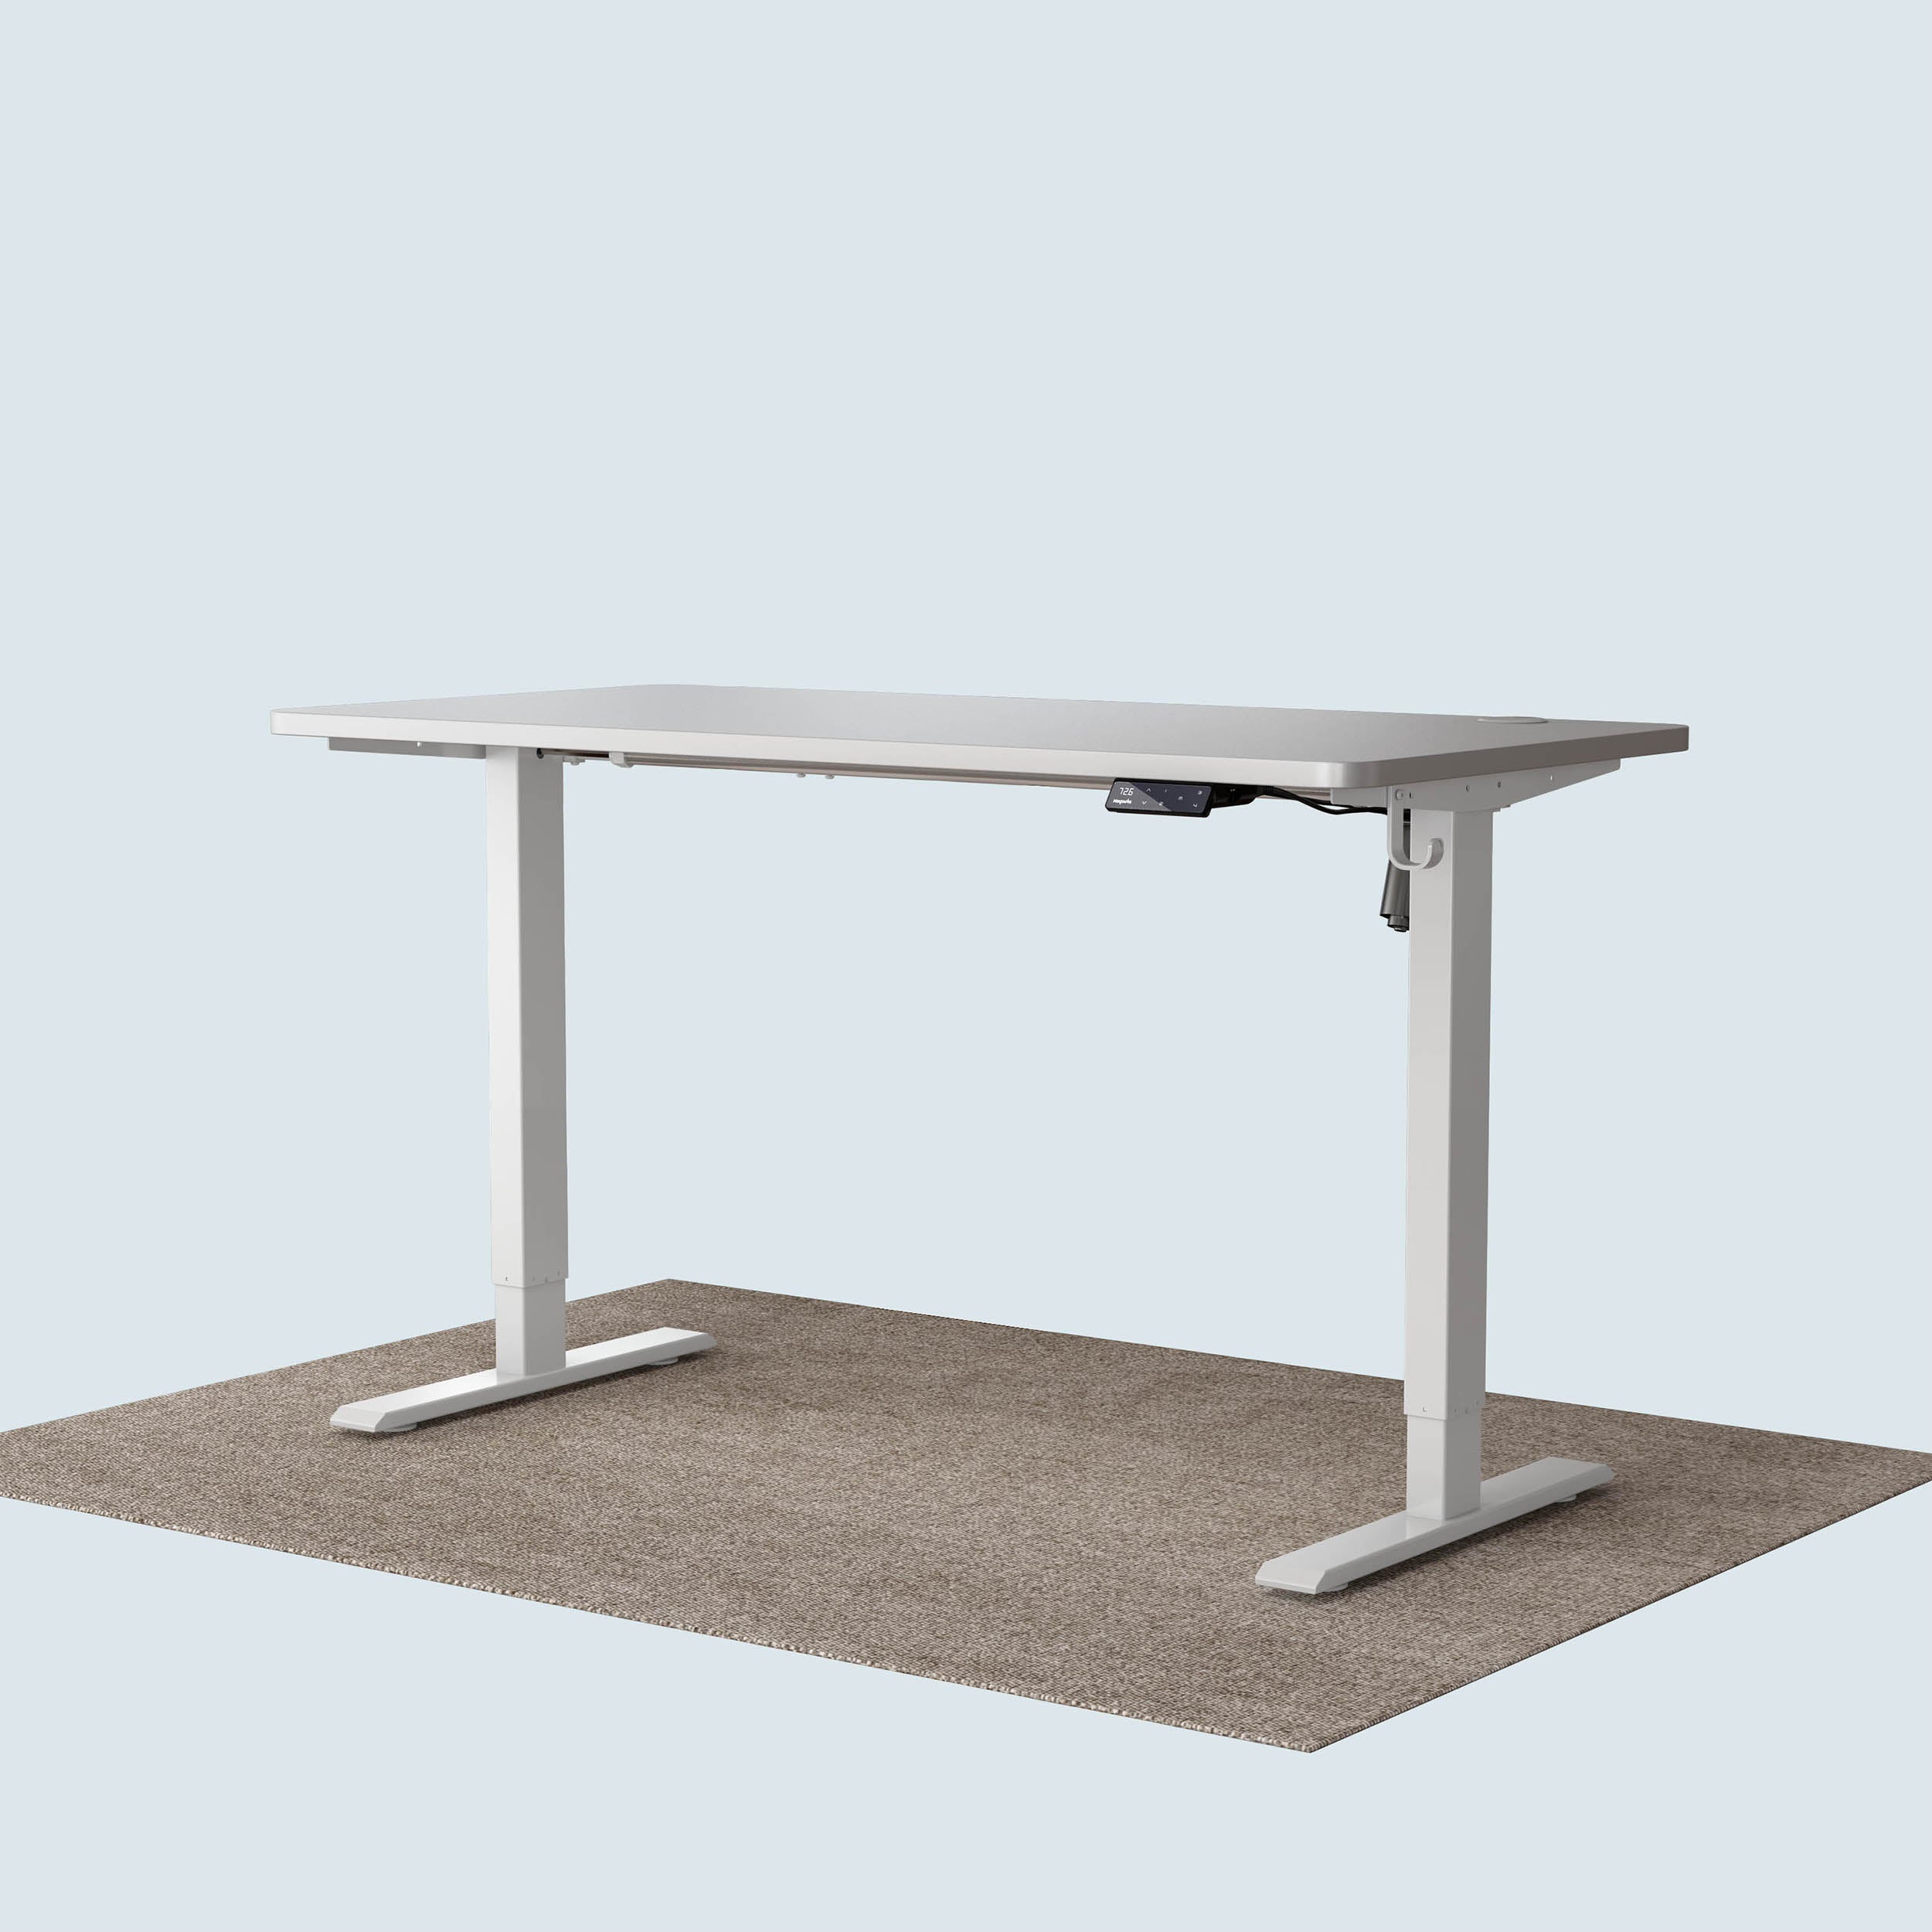 Maidesite T1 Basic standing desk white frame and 140x70cm desktop